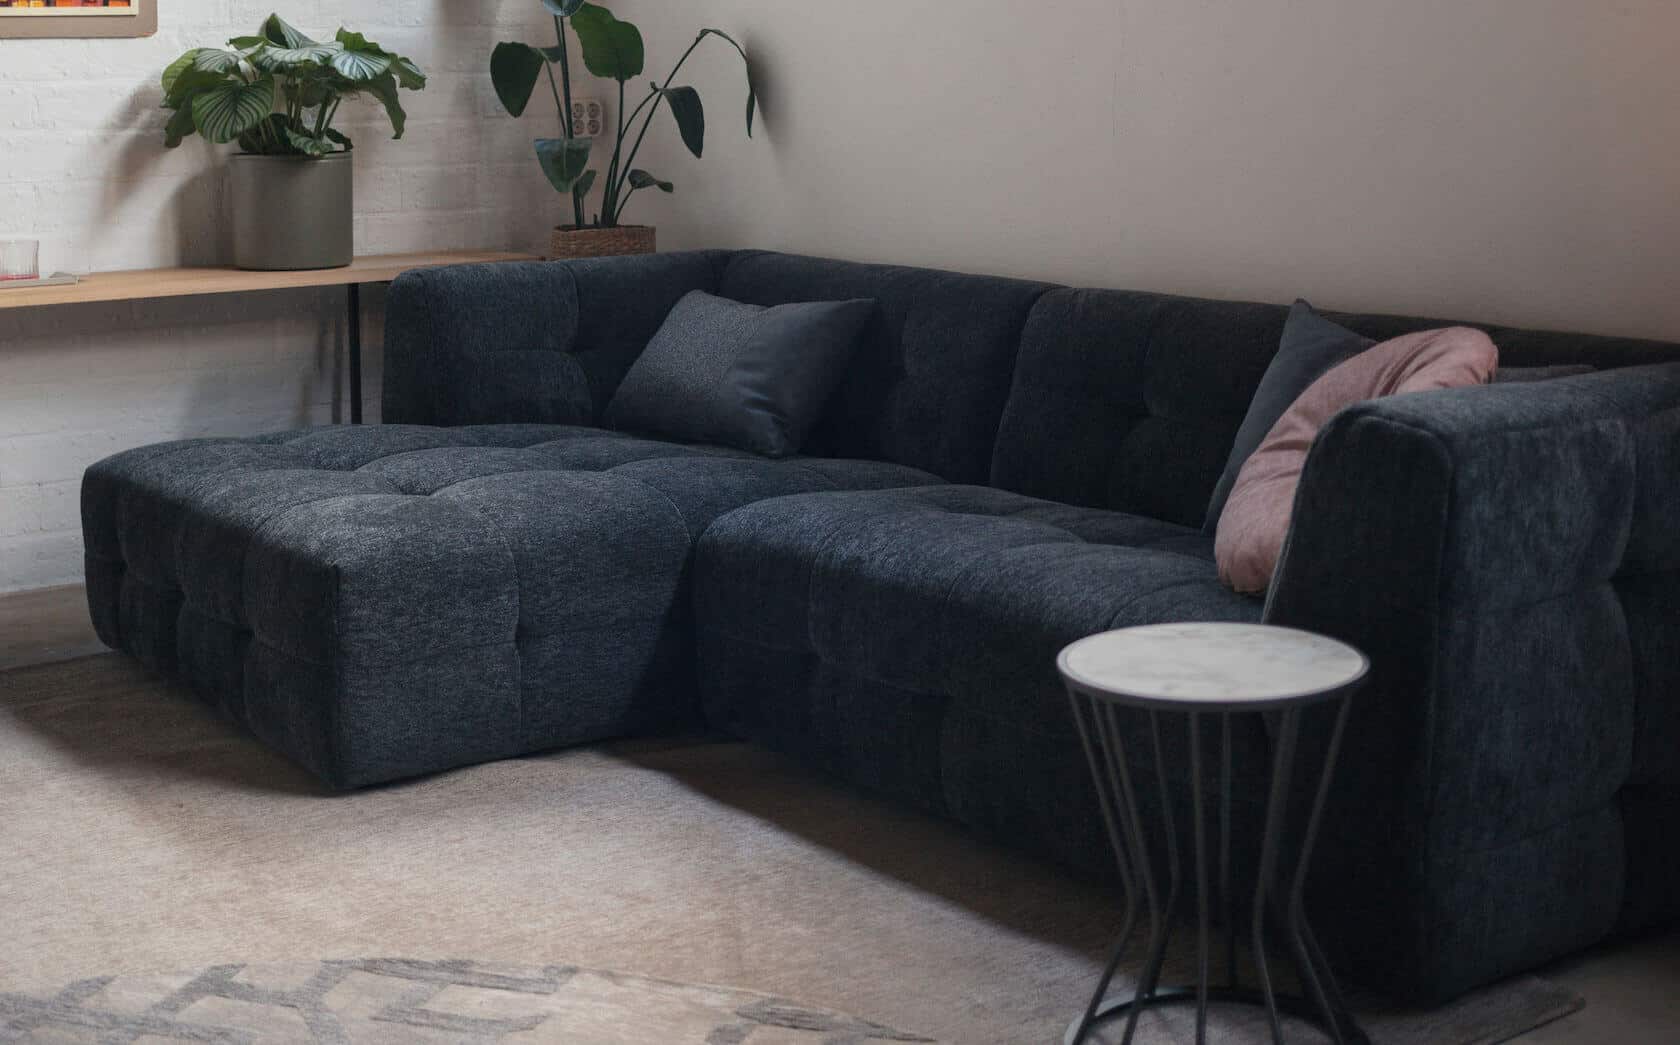 Laat je woonkamer groter lijken met deze meubelstukken